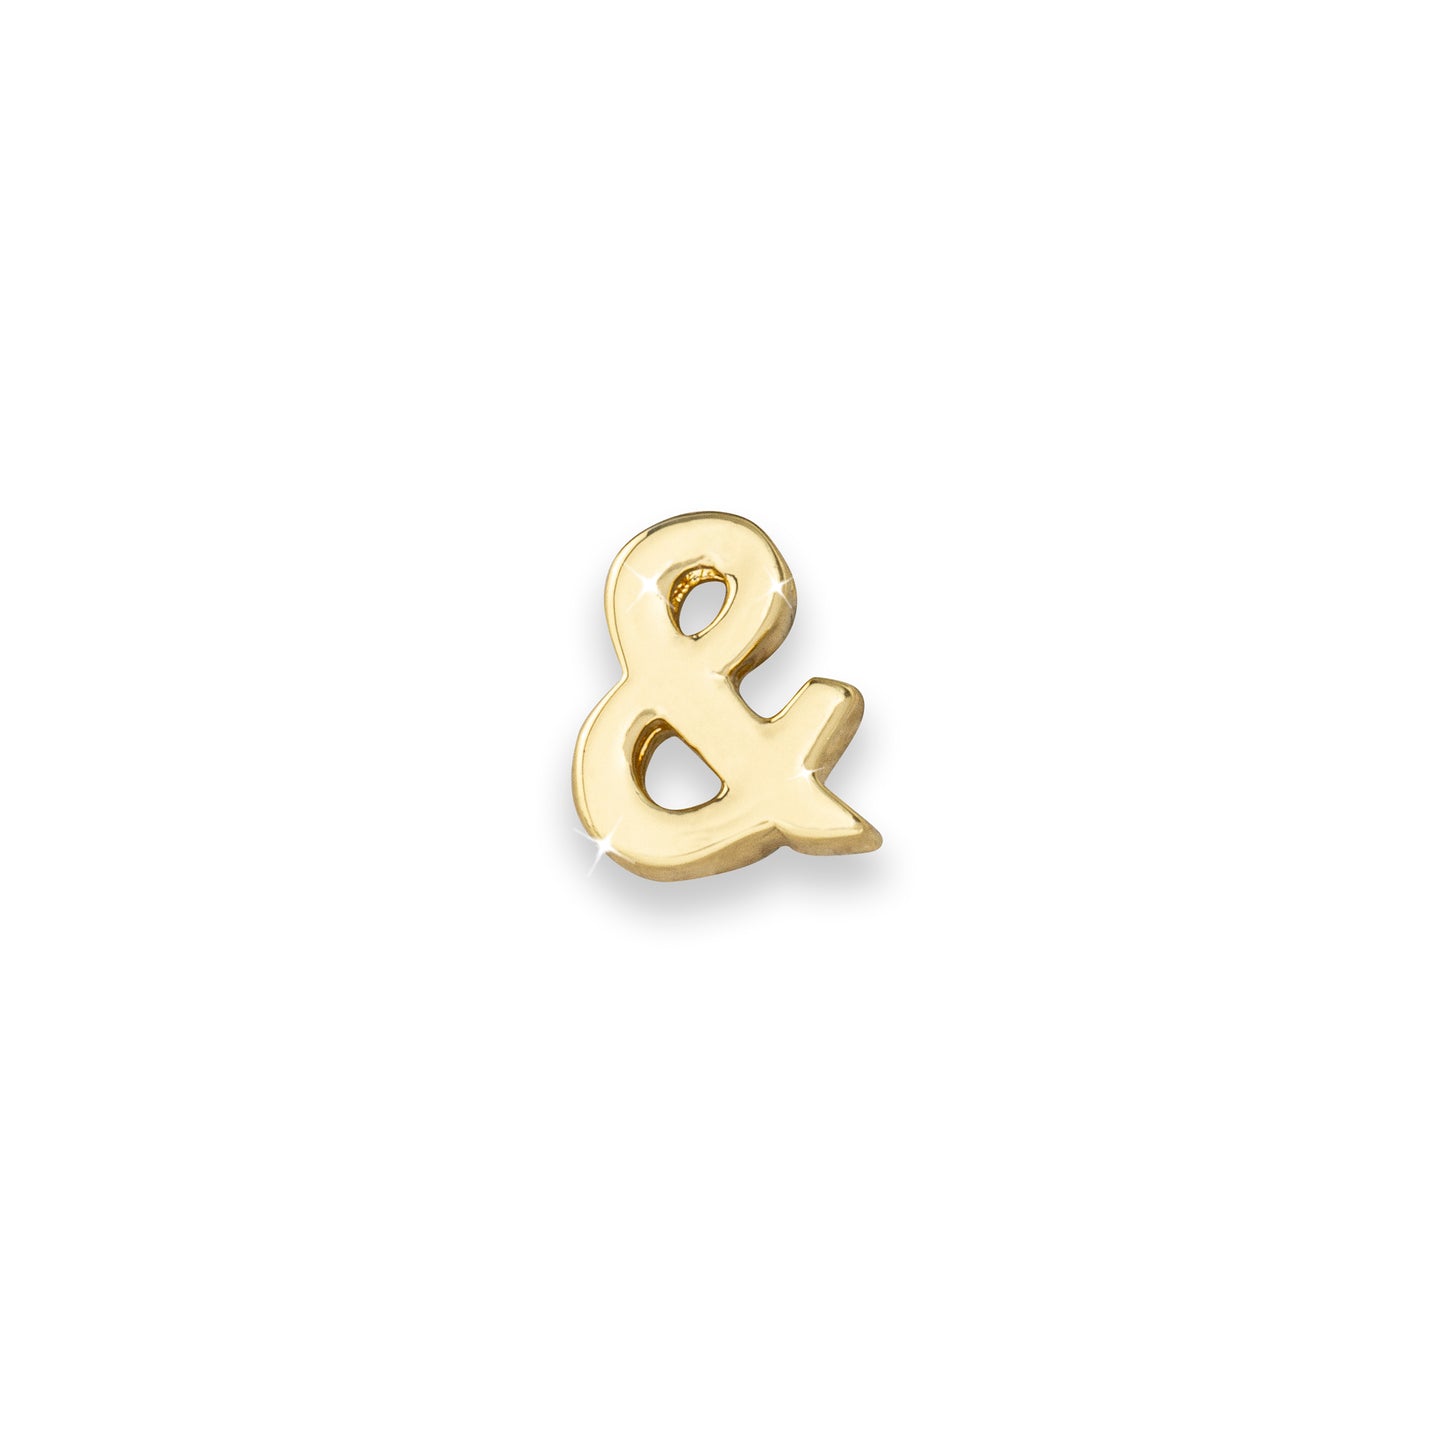 Gold & sign ampersand monogram charm for necklaces & bracelets